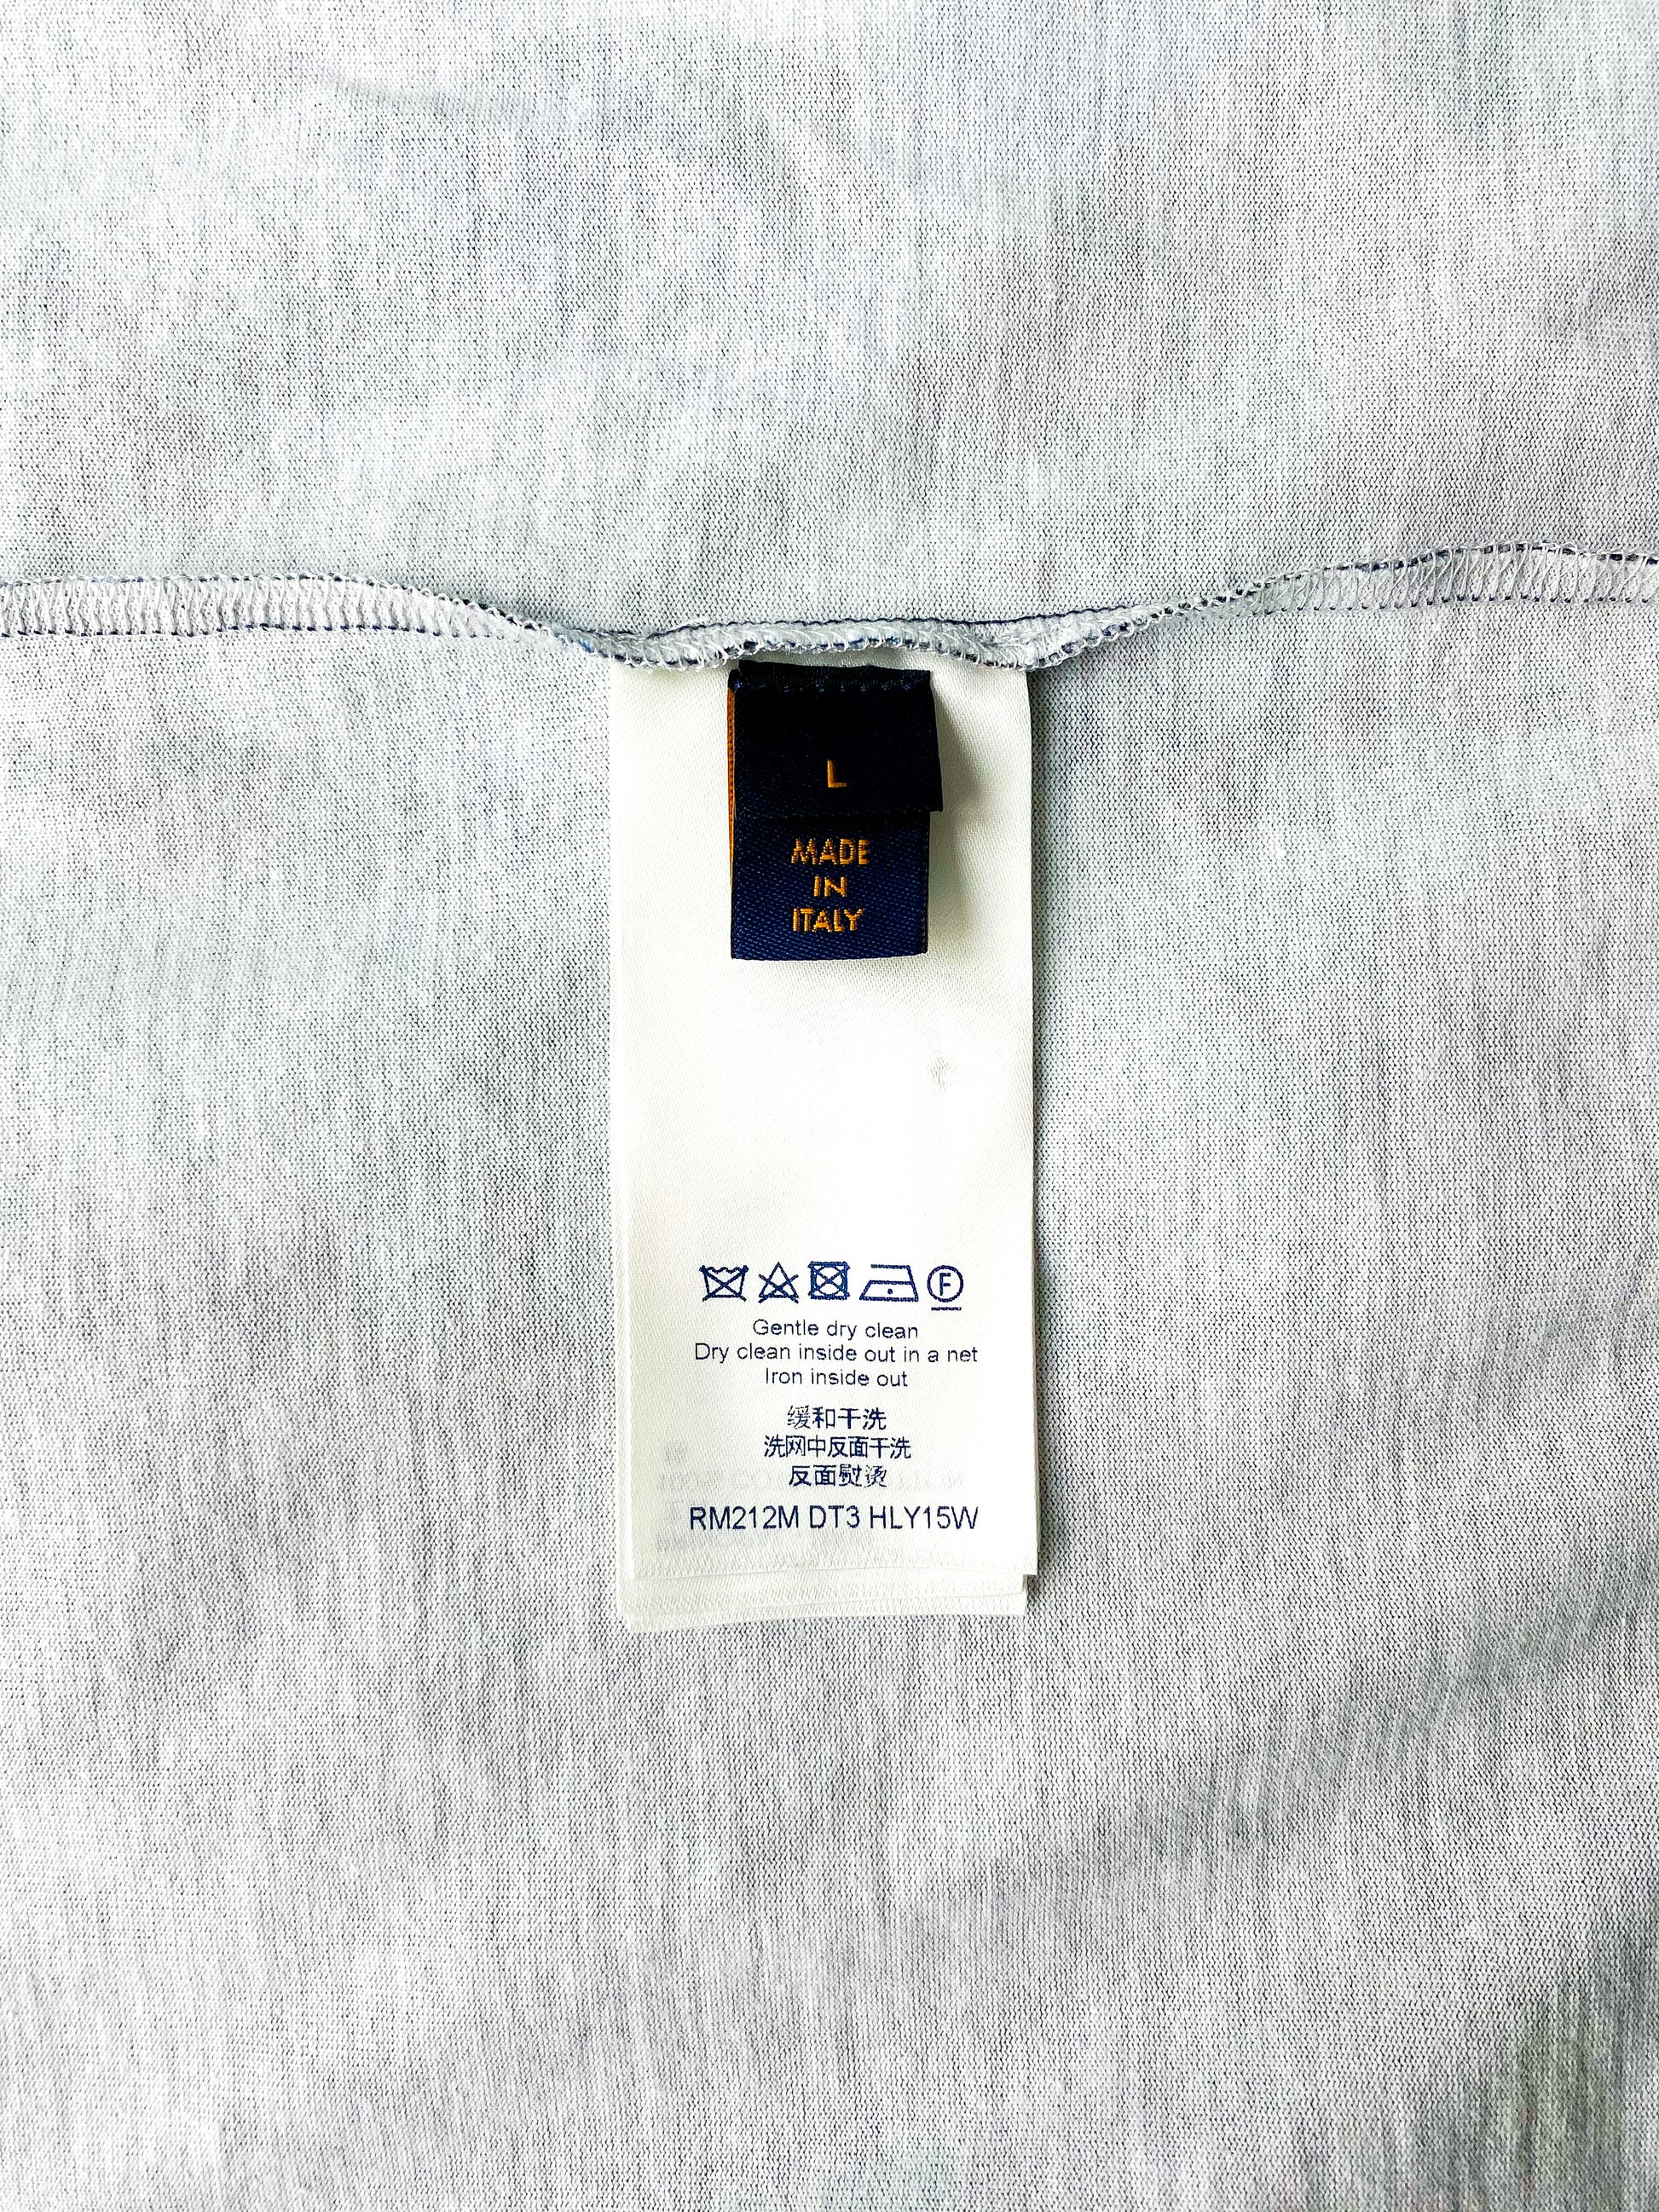 Louis Vuitton DAMIER Exclusive online pre-launch - salt print